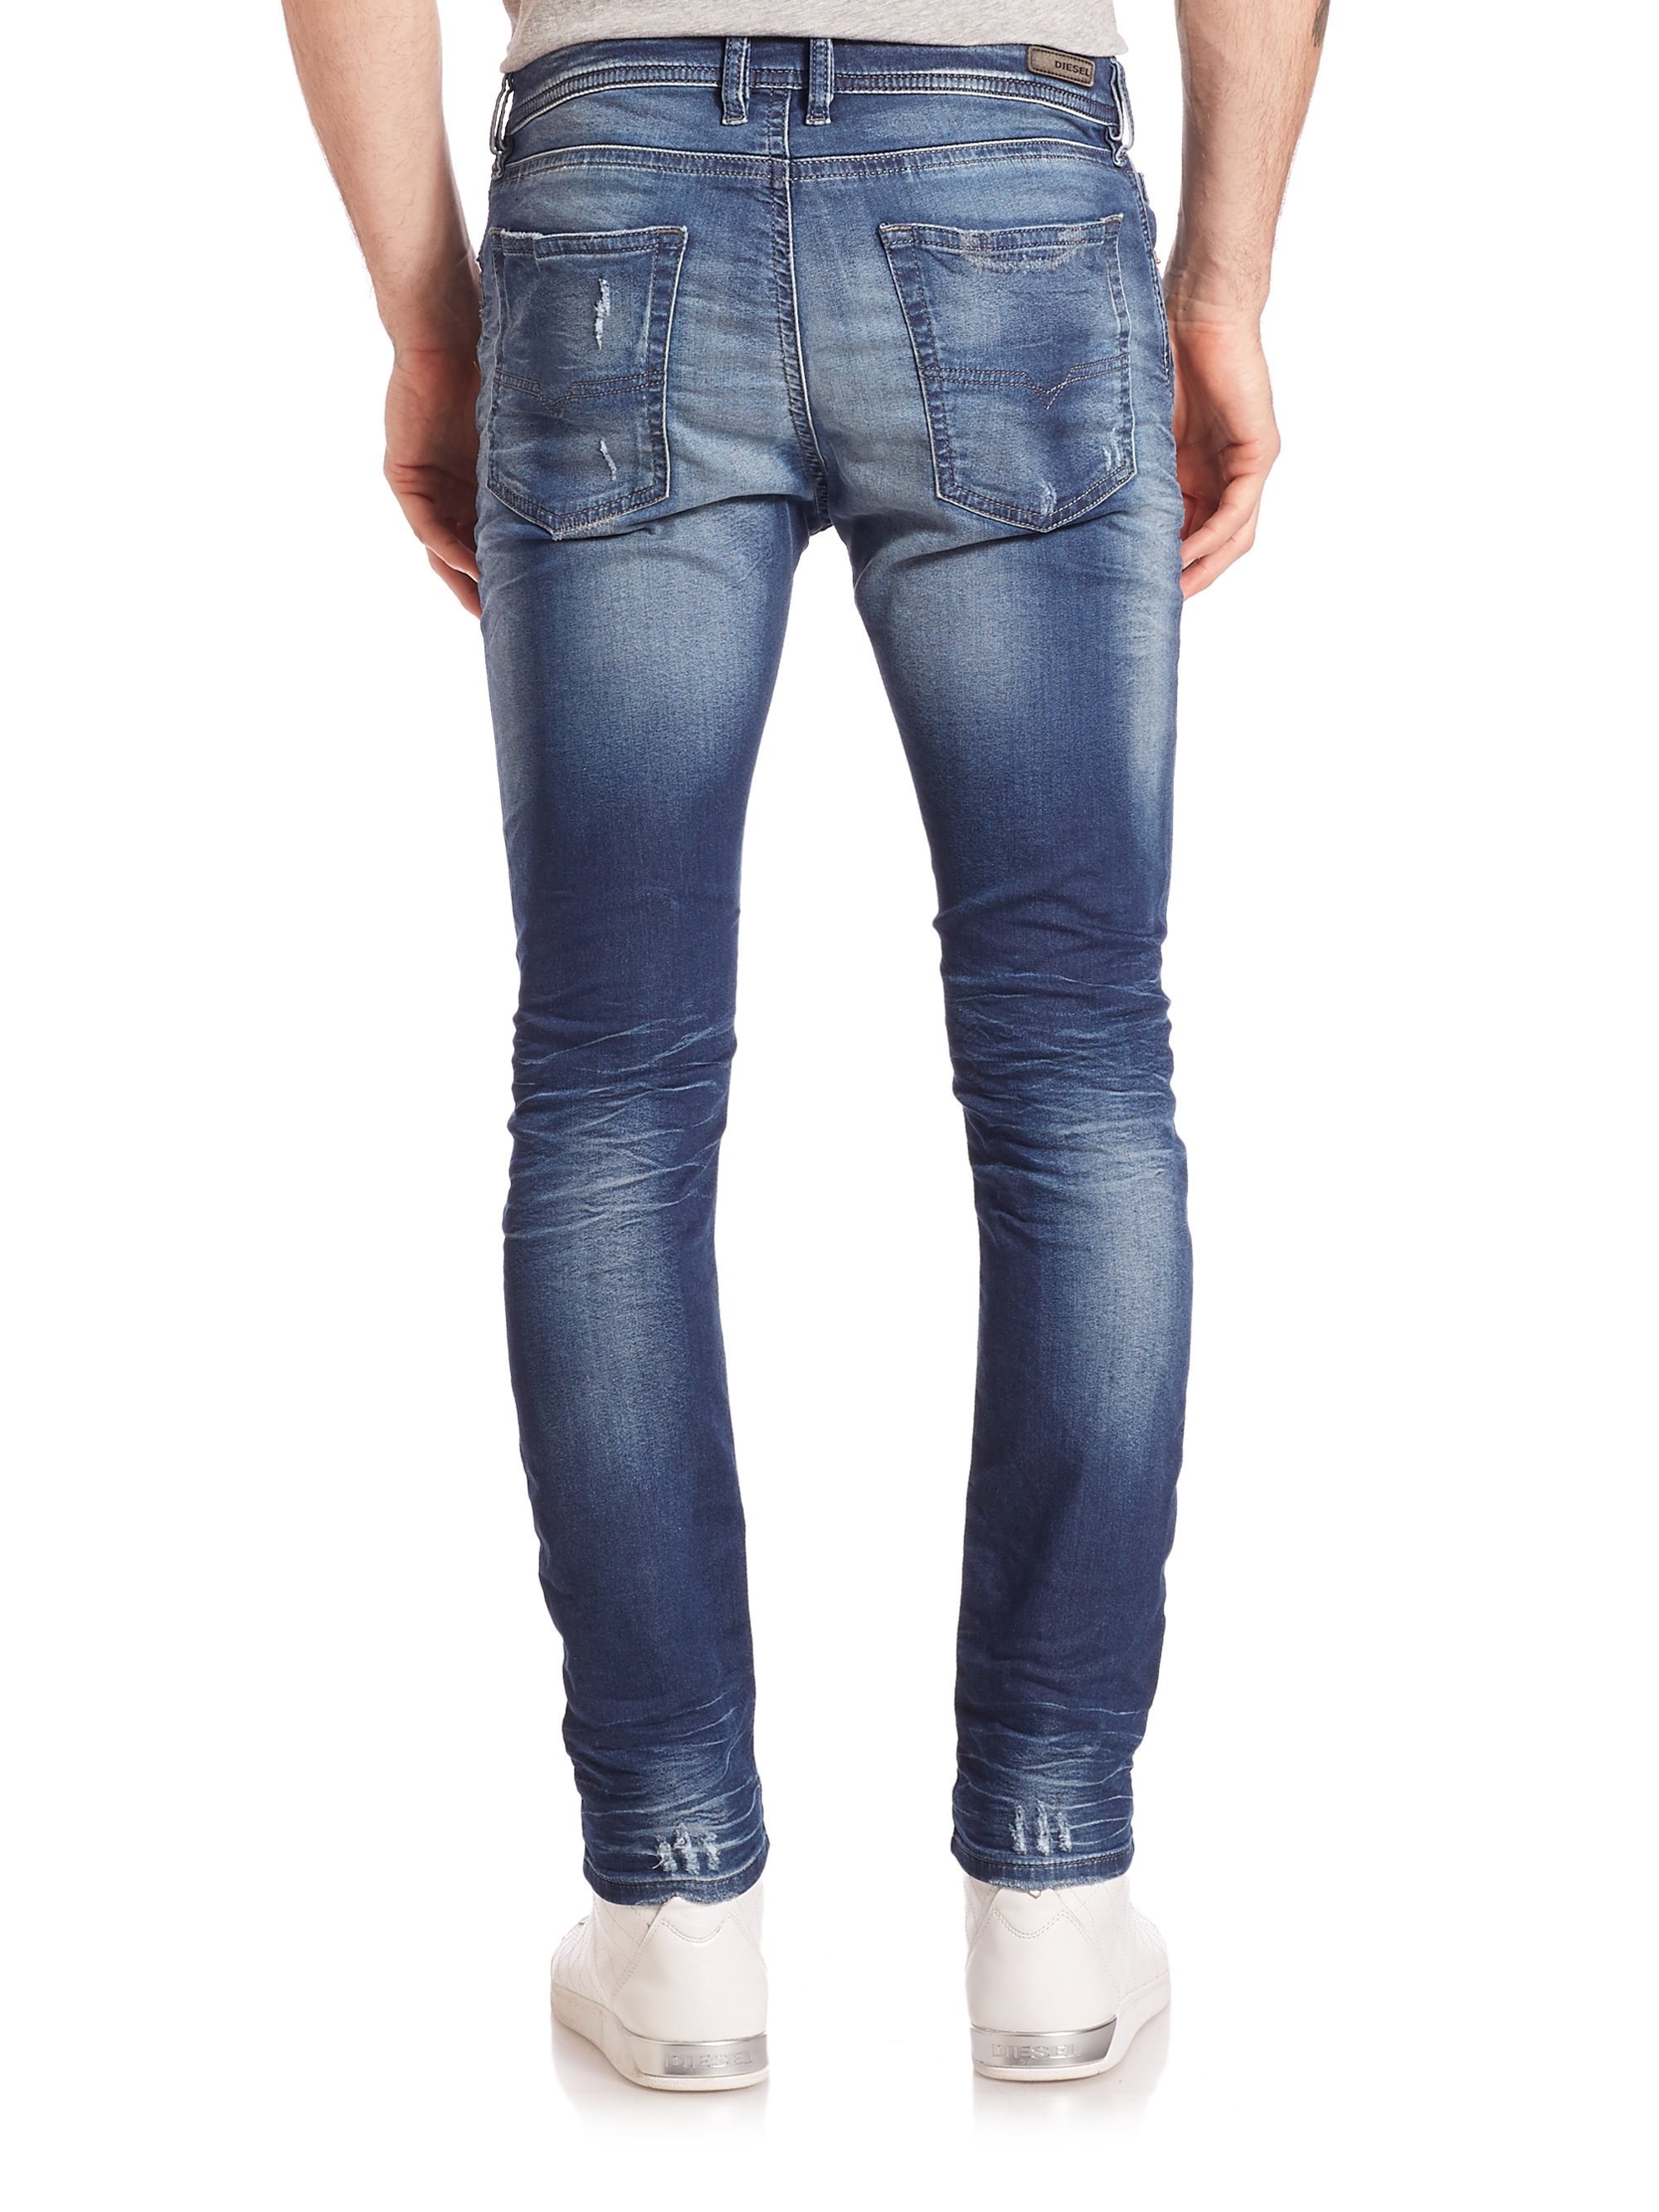 DIESEL Spender Distressed Skinny Jeans in Blue for Men - Lyst